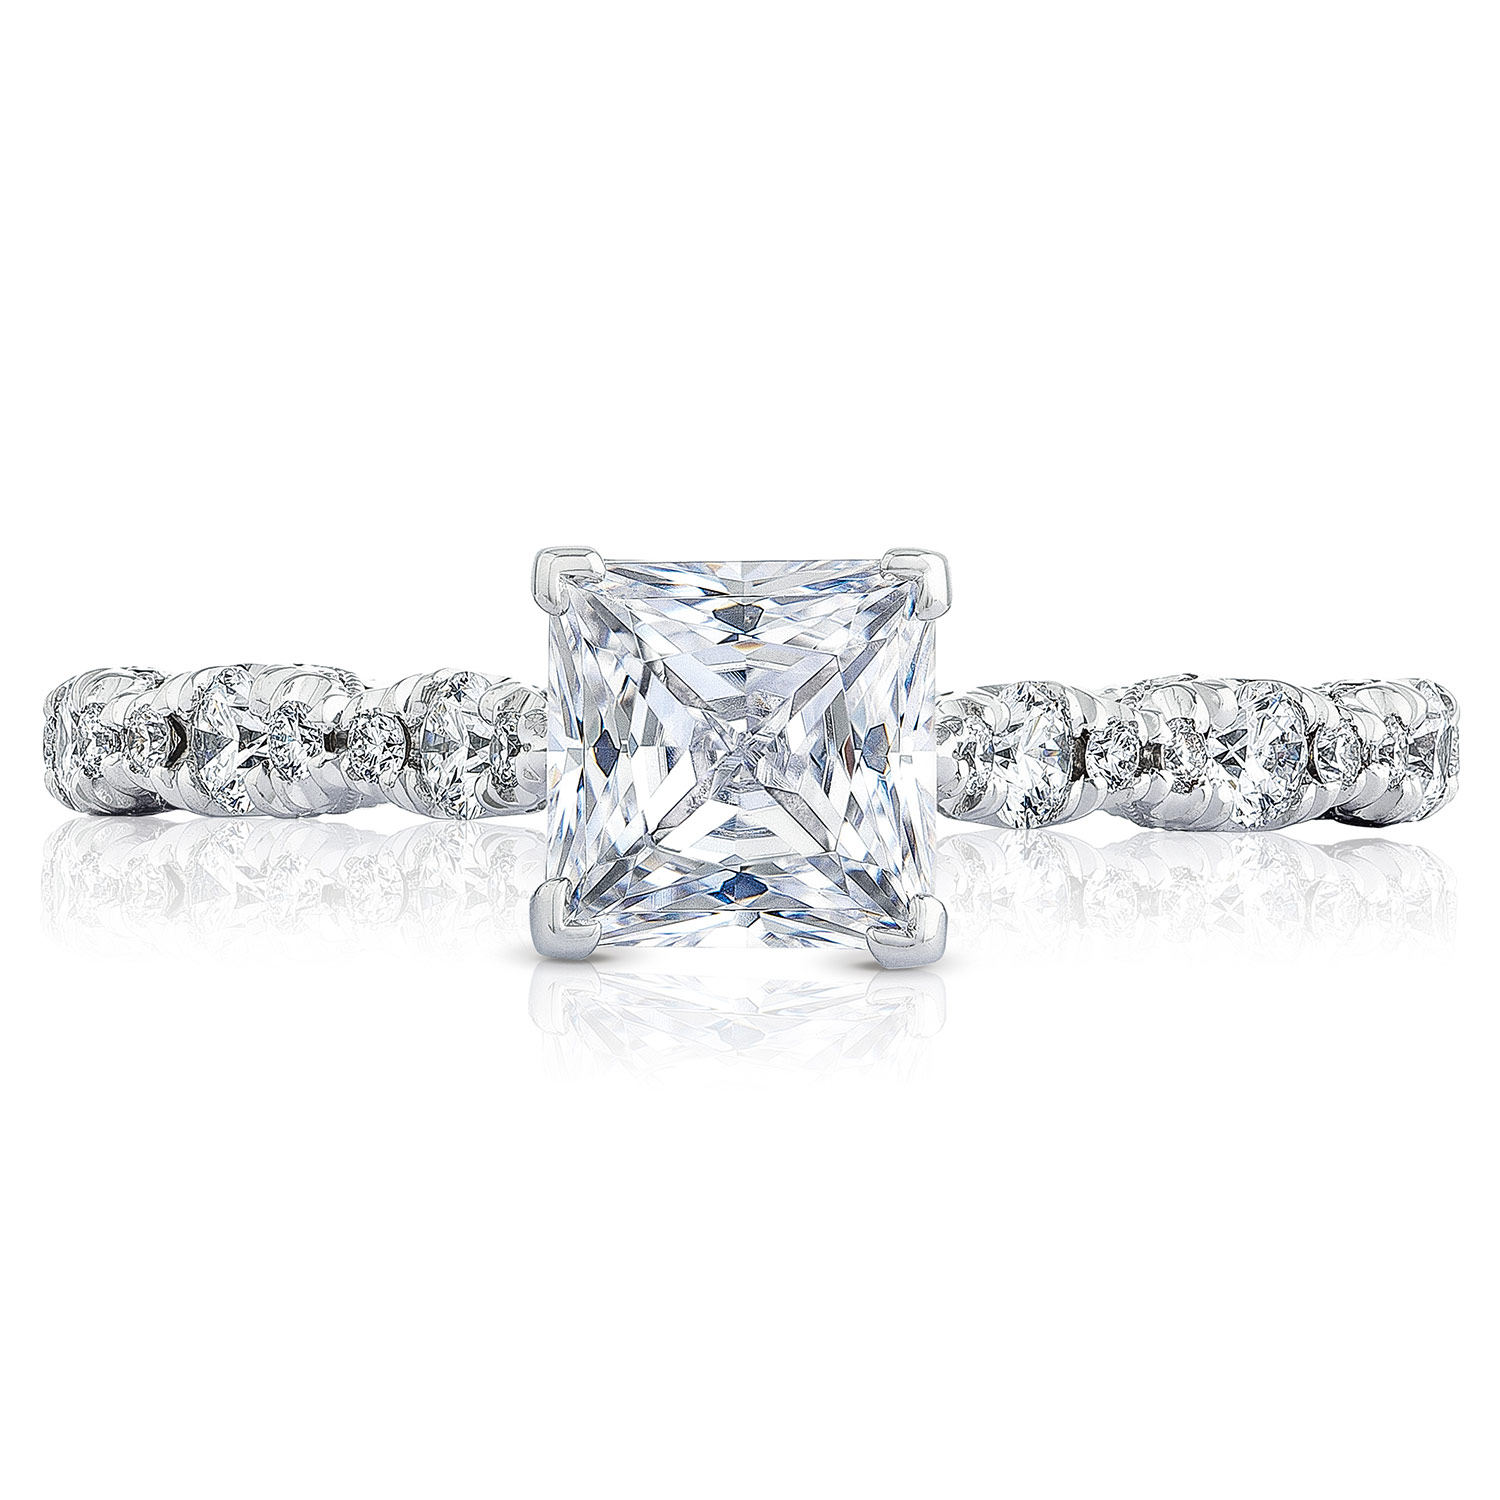 HT2558PR55 Platinum Tacori Petite Crescent Engagement Ring